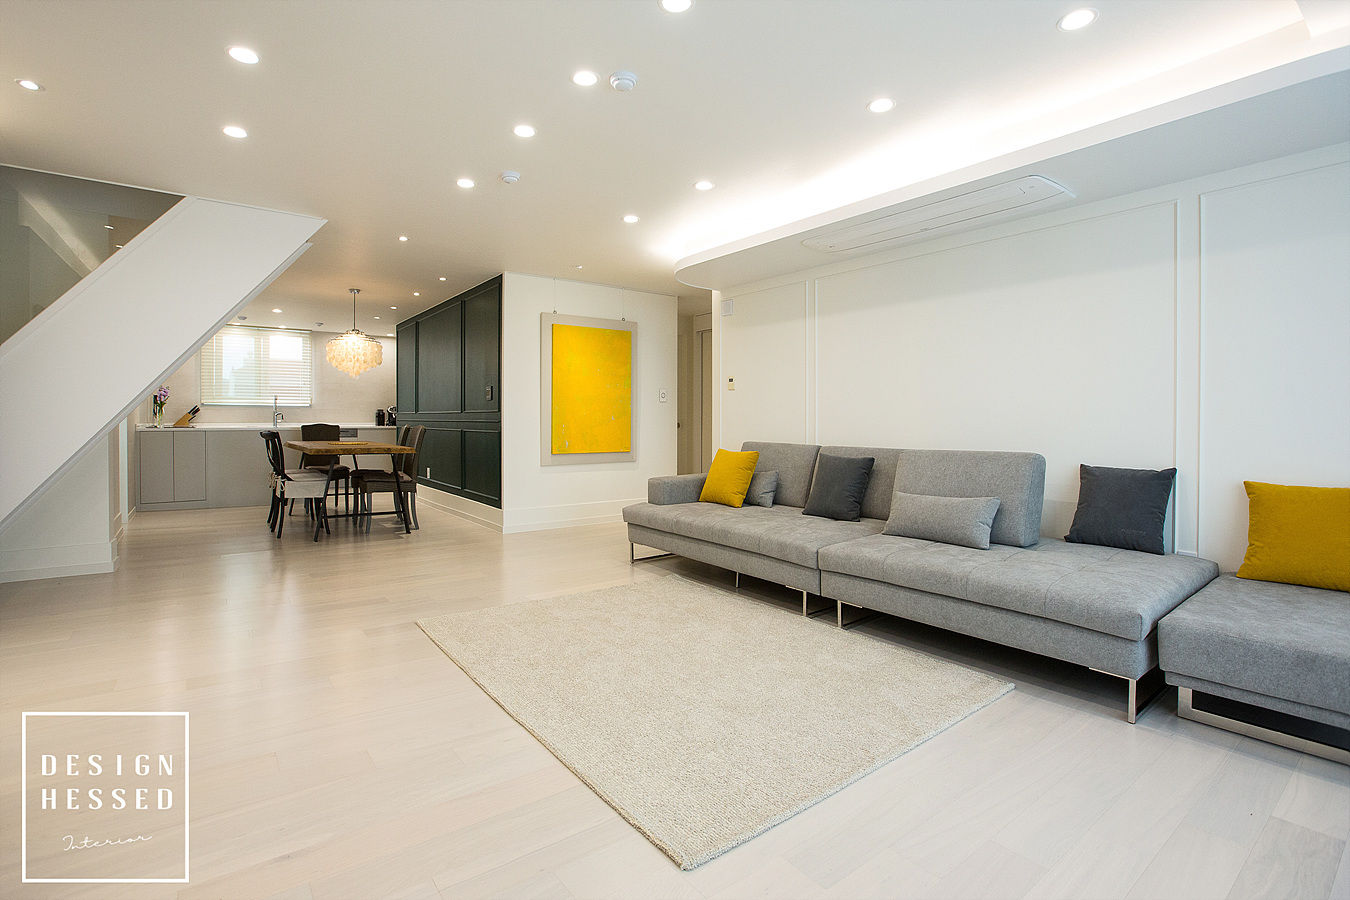 대전 어은동 한빛아파트 51평-거실, 주방, 디자인 헤세드 디자인 헤세드 Living room